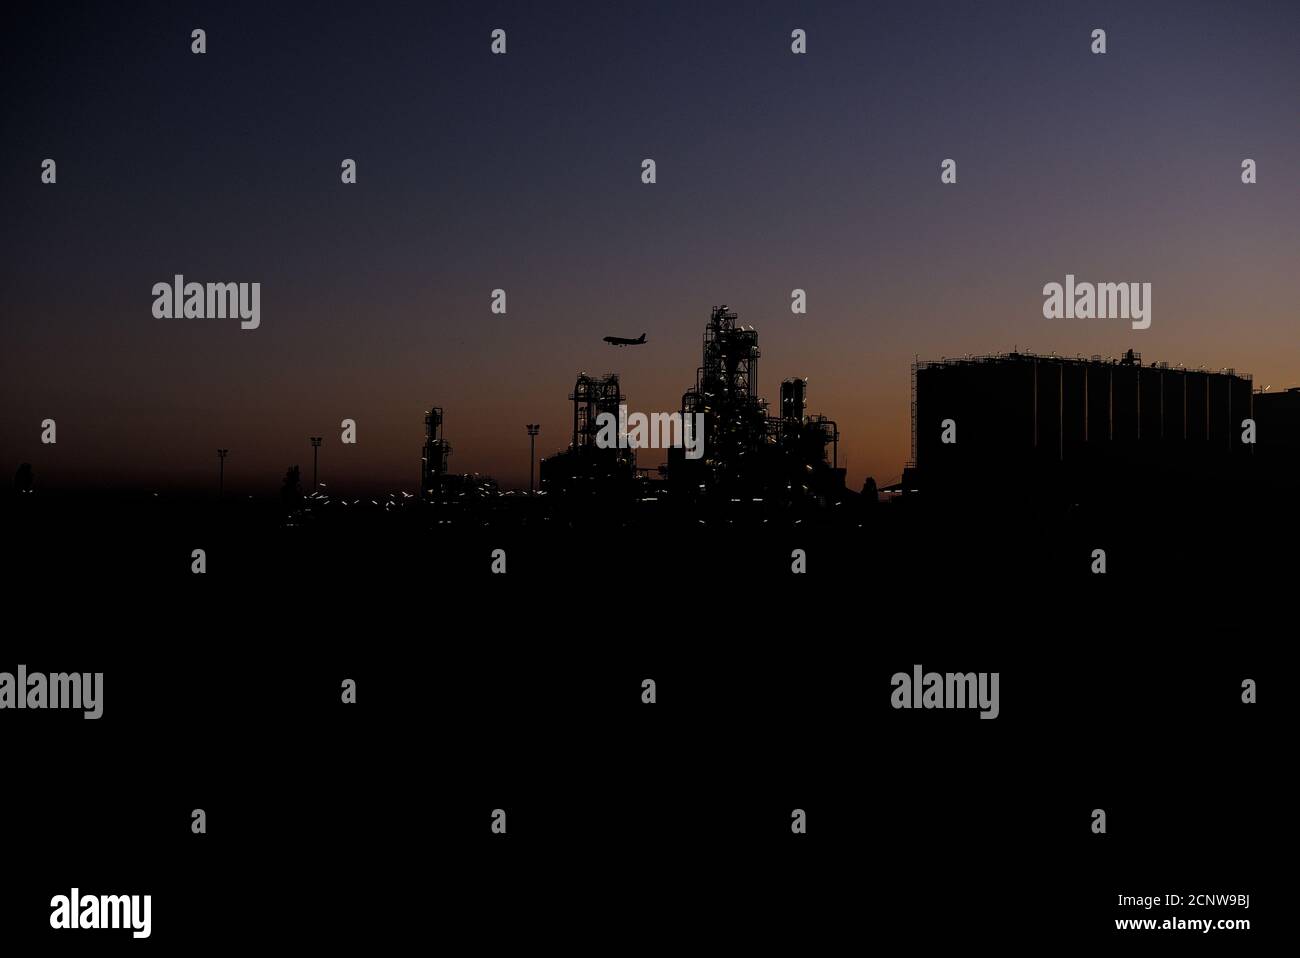 Industrianlage bei Sonnenuntergang mit Mondsichel und Flugzeug Stock Photo